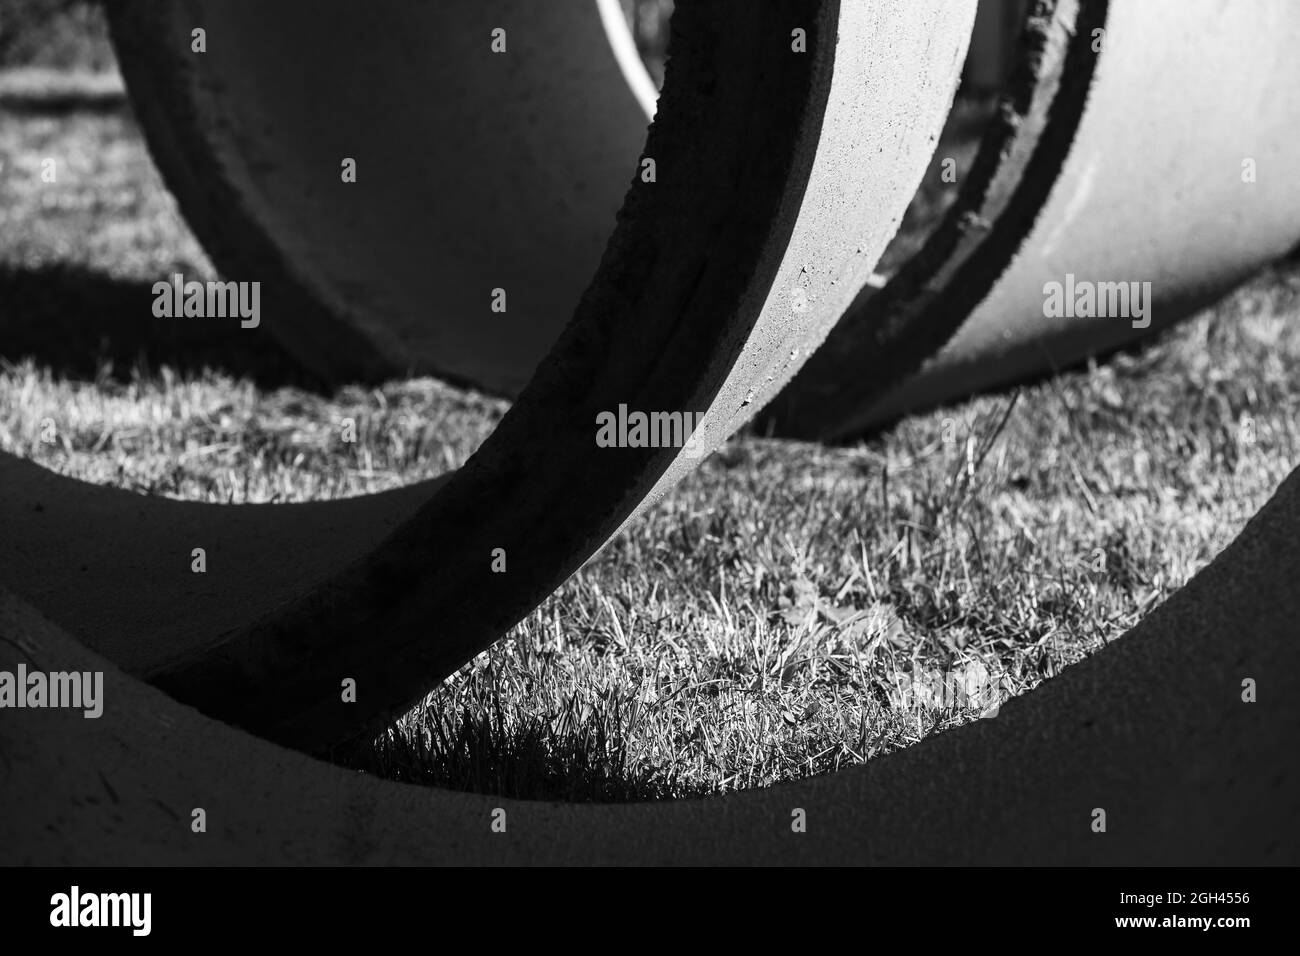 Photo en noir et blanc des détails. Des anneaux en béton reposent sur un fond photo industriel abstrait et herbacé Banque D'Images